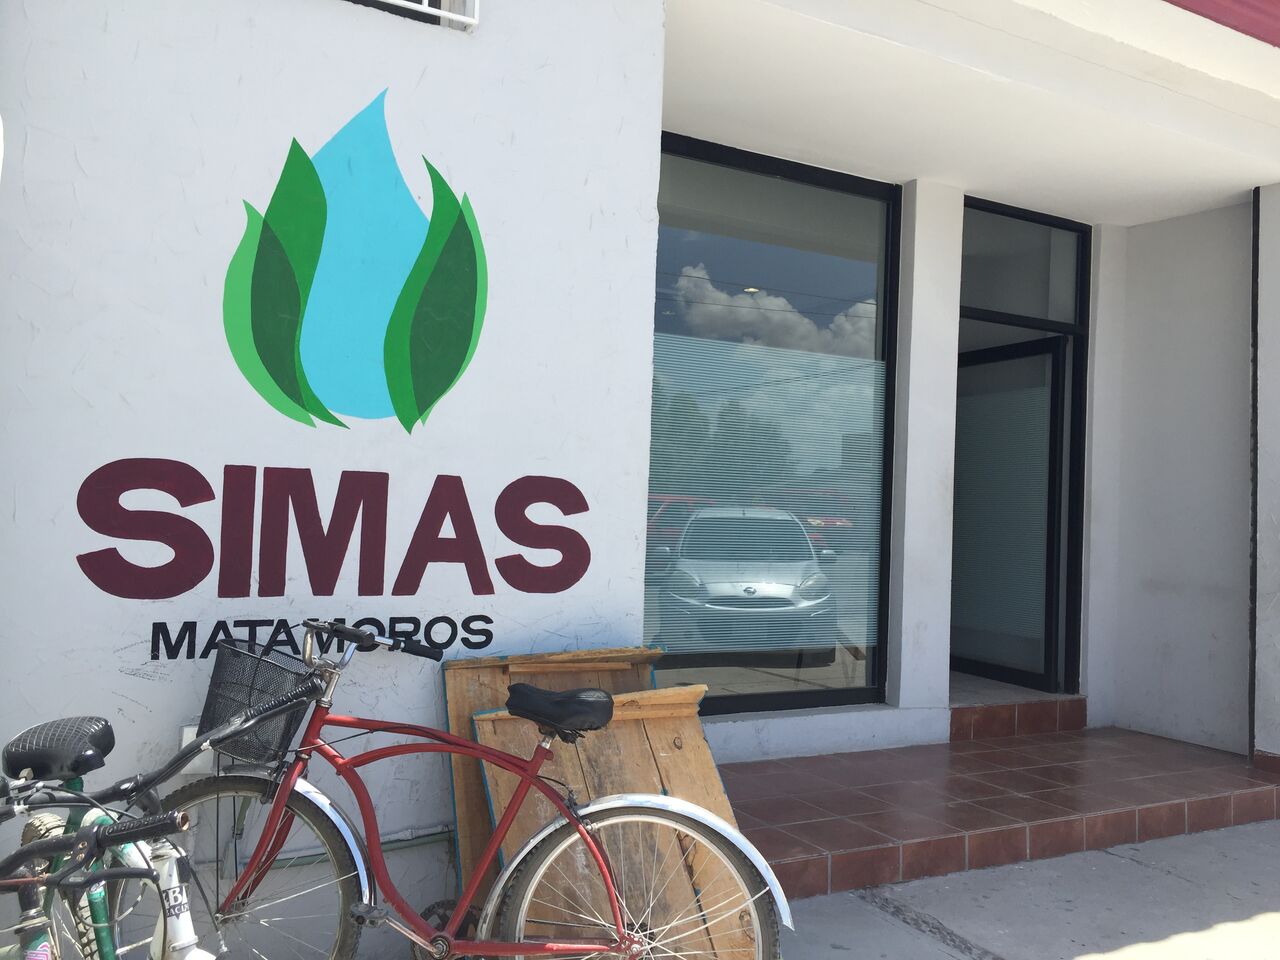 Emiten recomendación al Simas de Matamoros por dejar a ejido sin agua potable durante diez meses